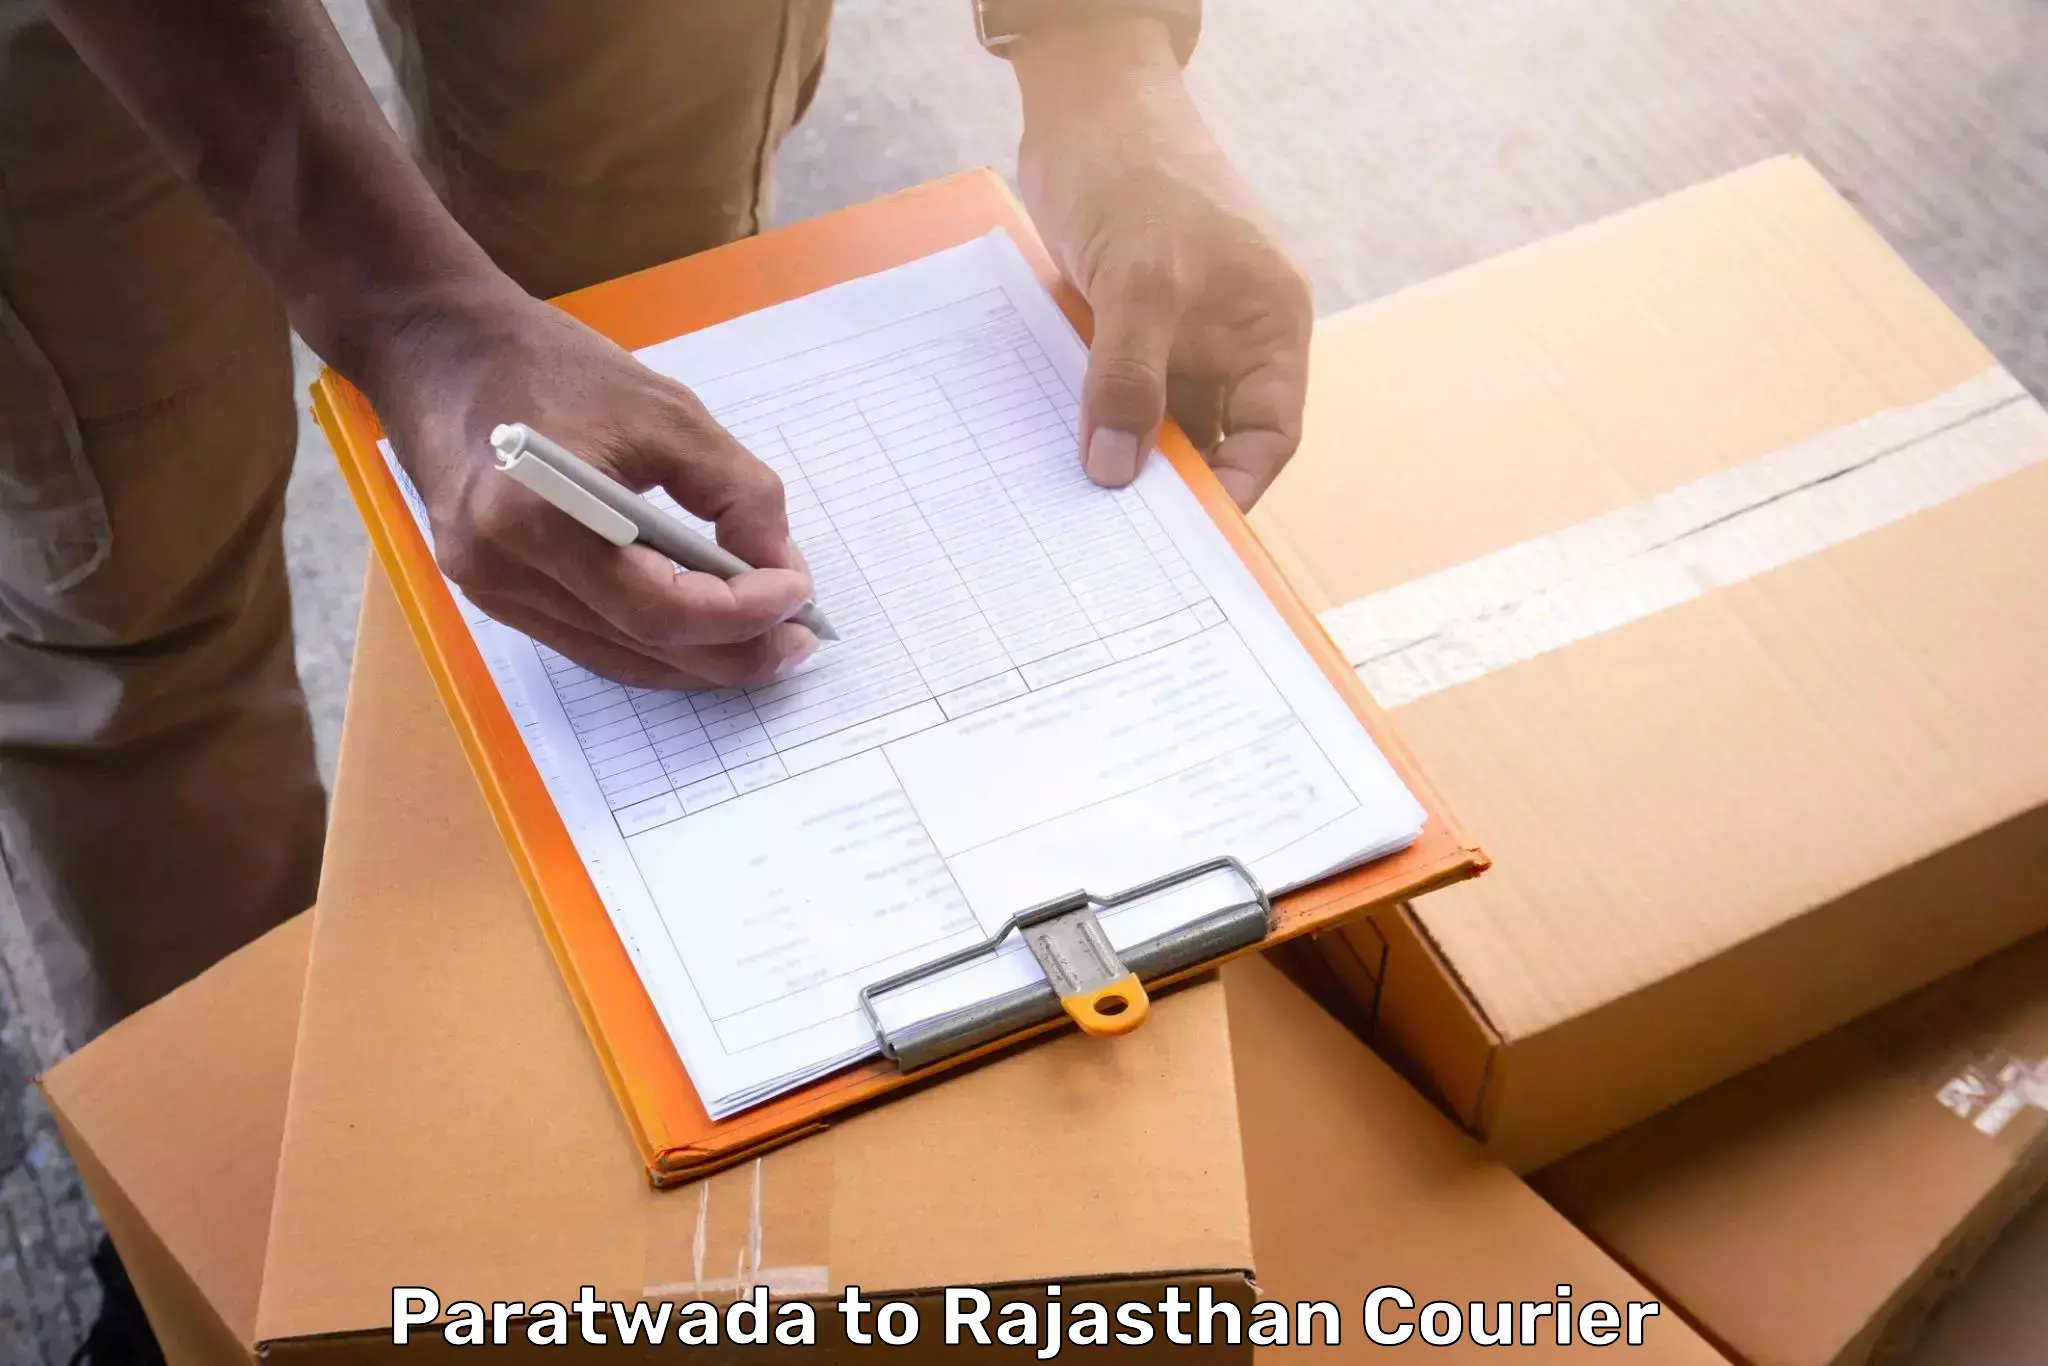 Baggage transport network Paratwada to Pratapgarh Rajasthan